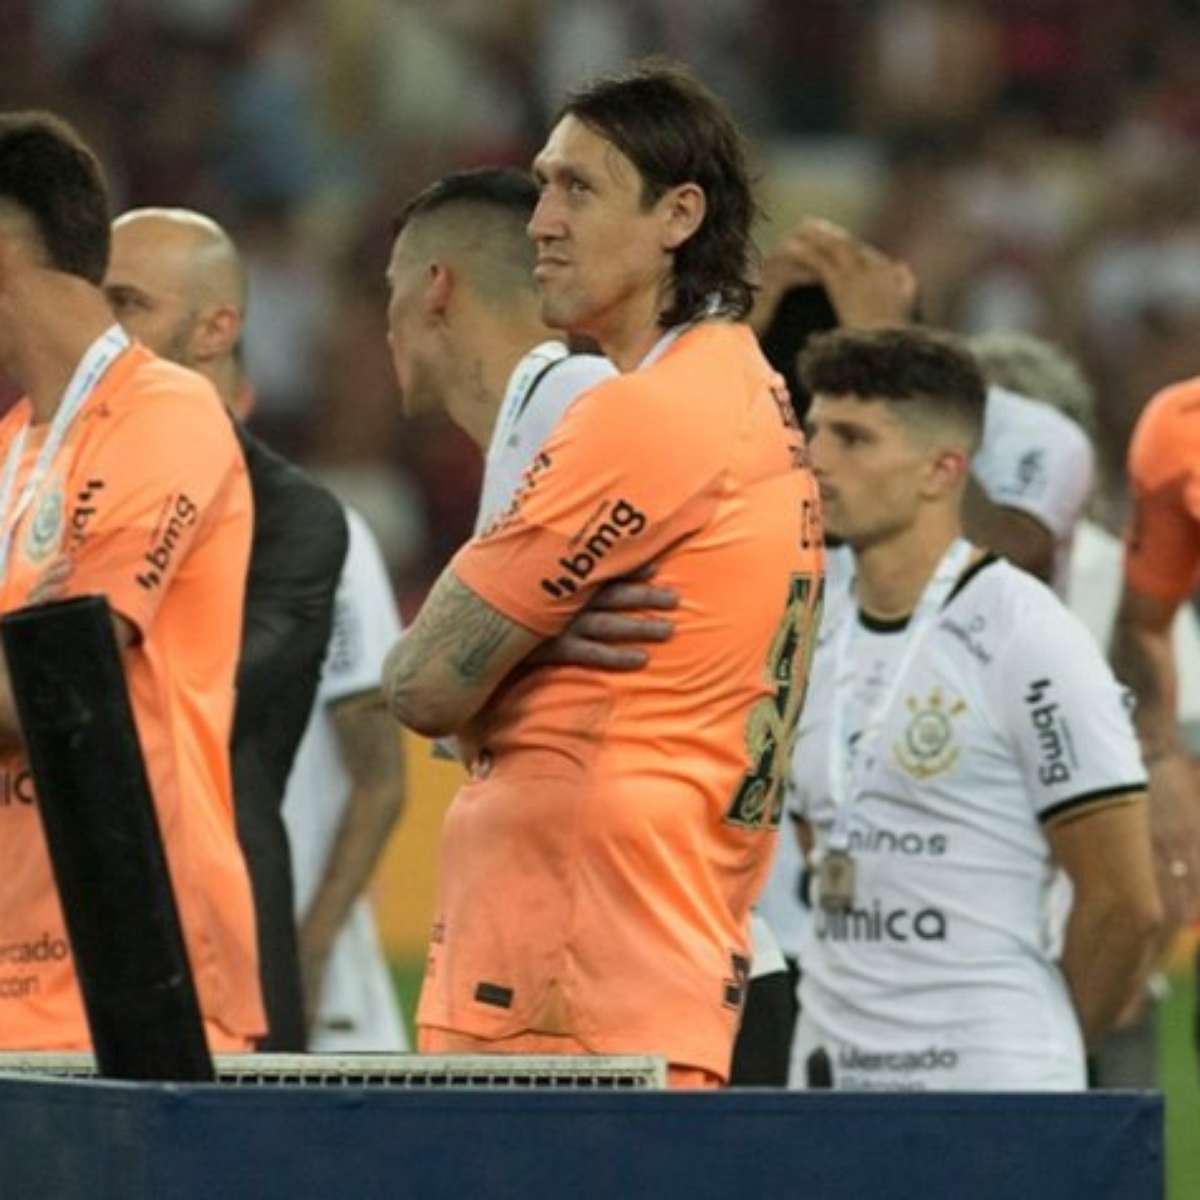 Cássio vence prêmio de melhor goleiro da Copa do Brasil